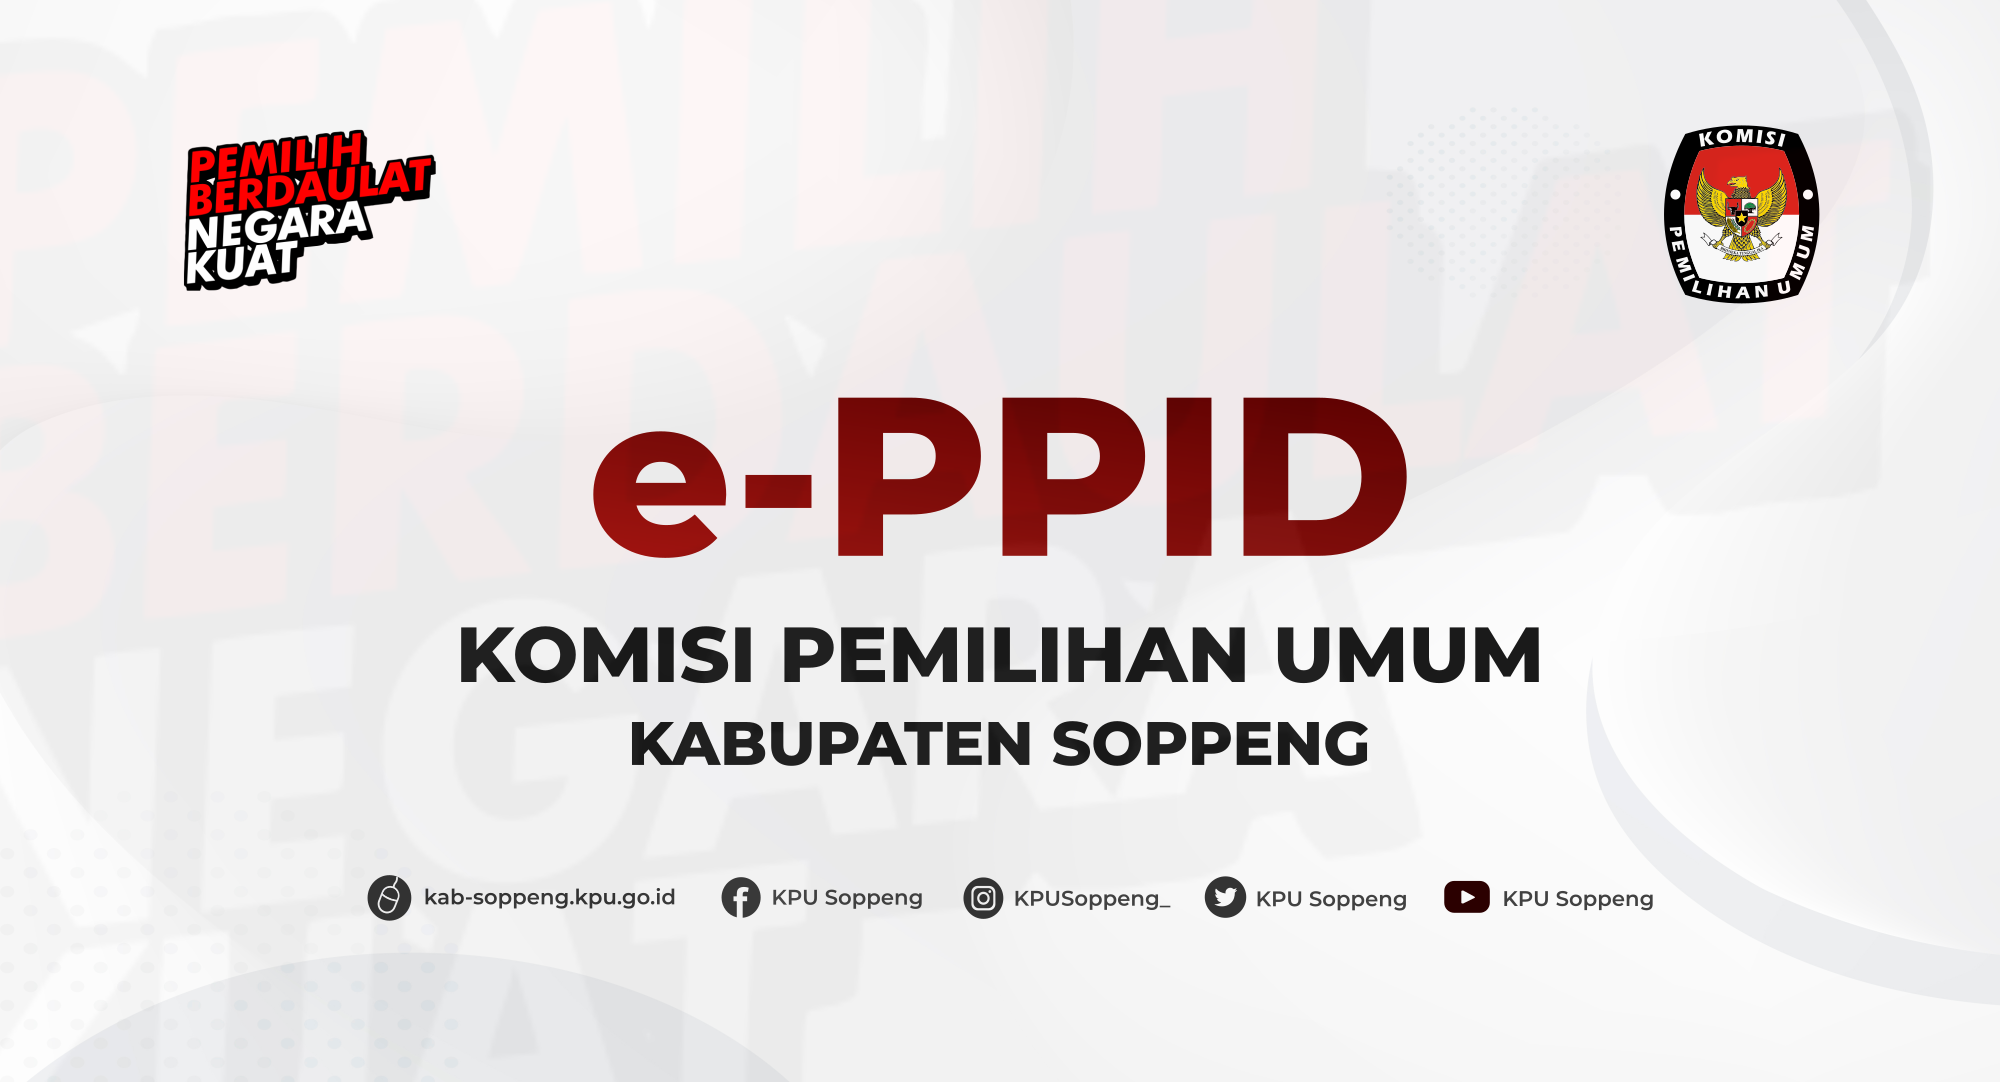 Selamat Datang di Layanan Informasi e-ppid KPU Kabupaten Soppeng